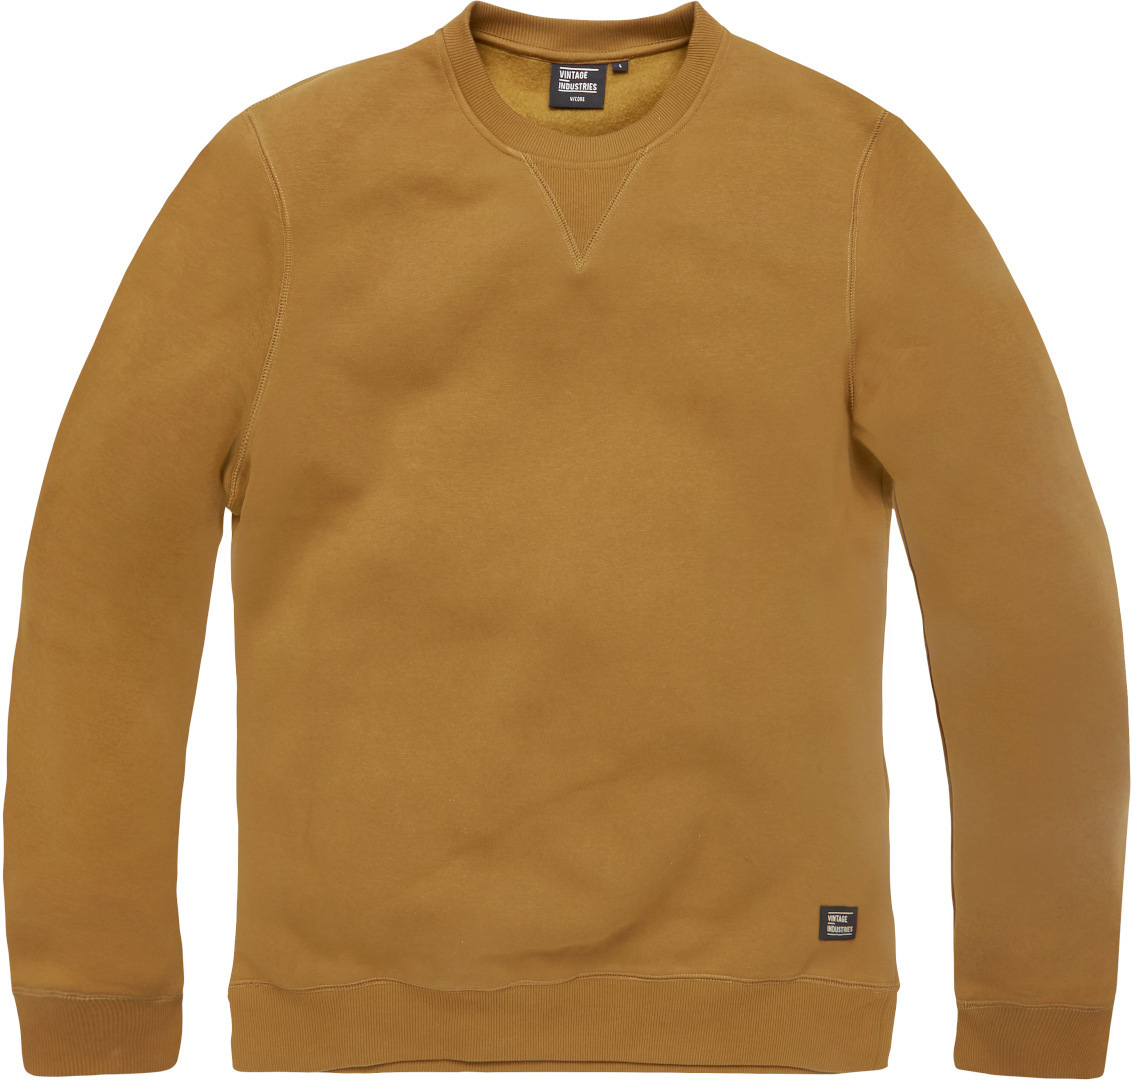 Vintage Industries Greeley Crewneck Sweatshirt Brun S